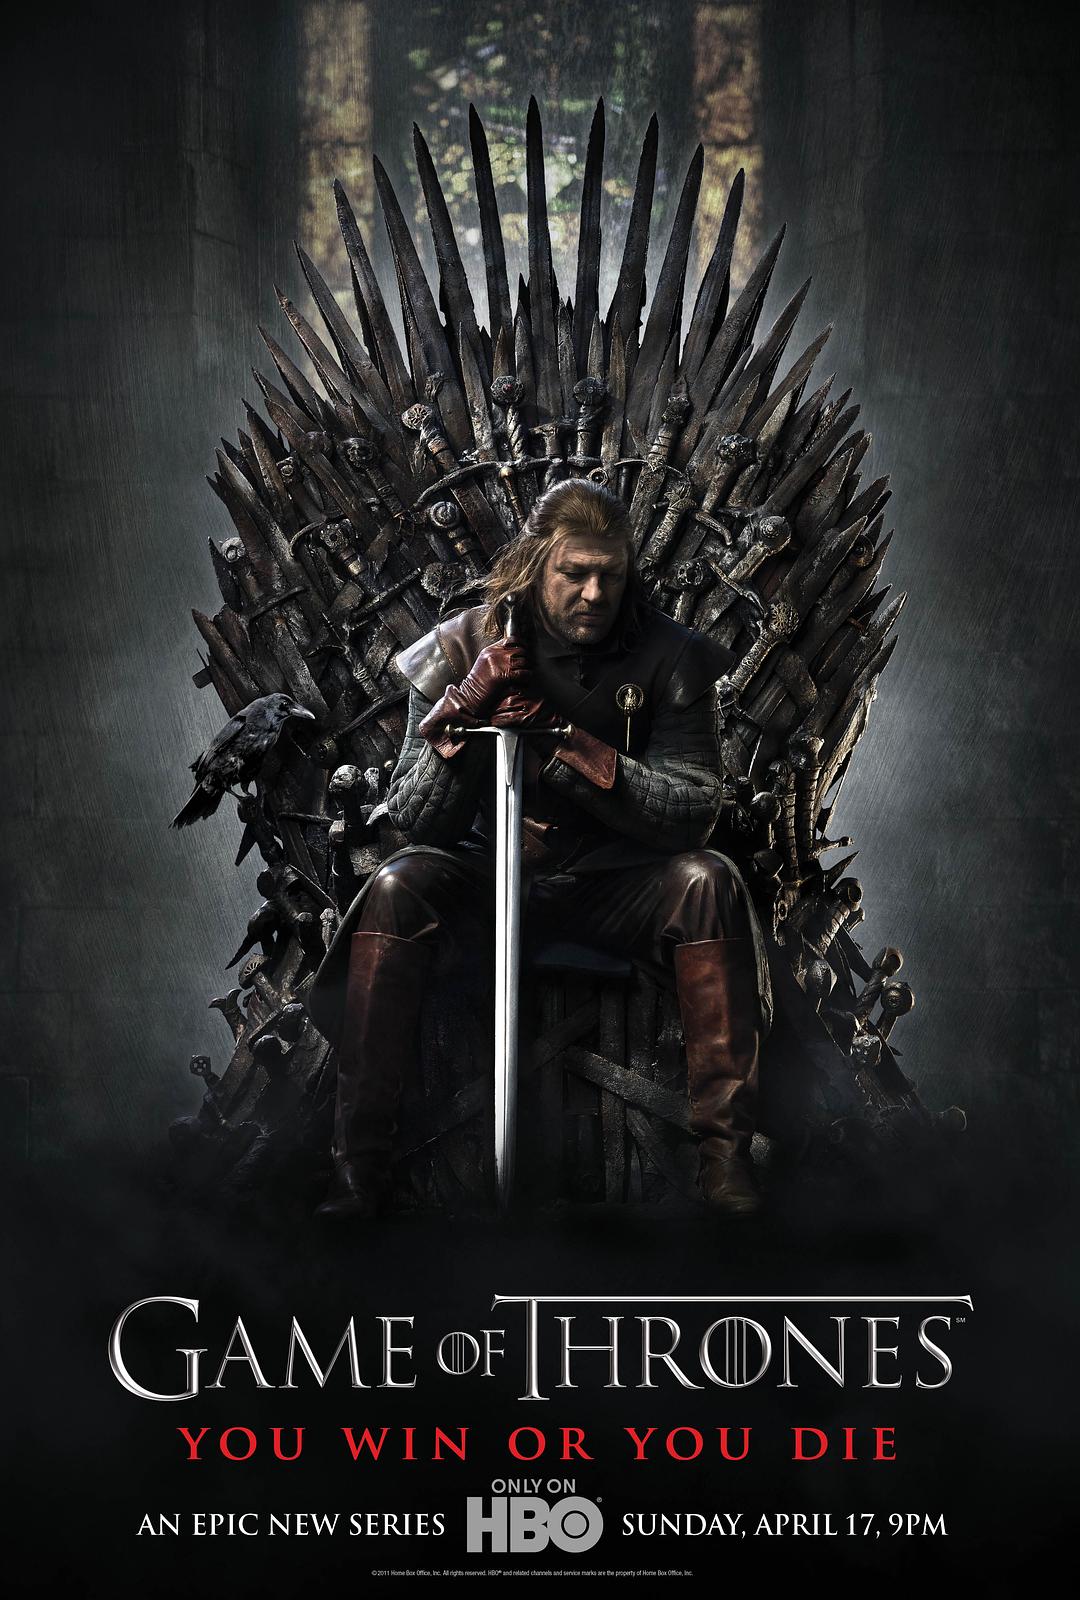 权利的游戏 第一季 Game.of.Thrones.S01.2011.Blu-ray.1080p.AVC.DTS-HD.MA.5.1-Softfeng@CHDBits 213.81GB-1.jpg